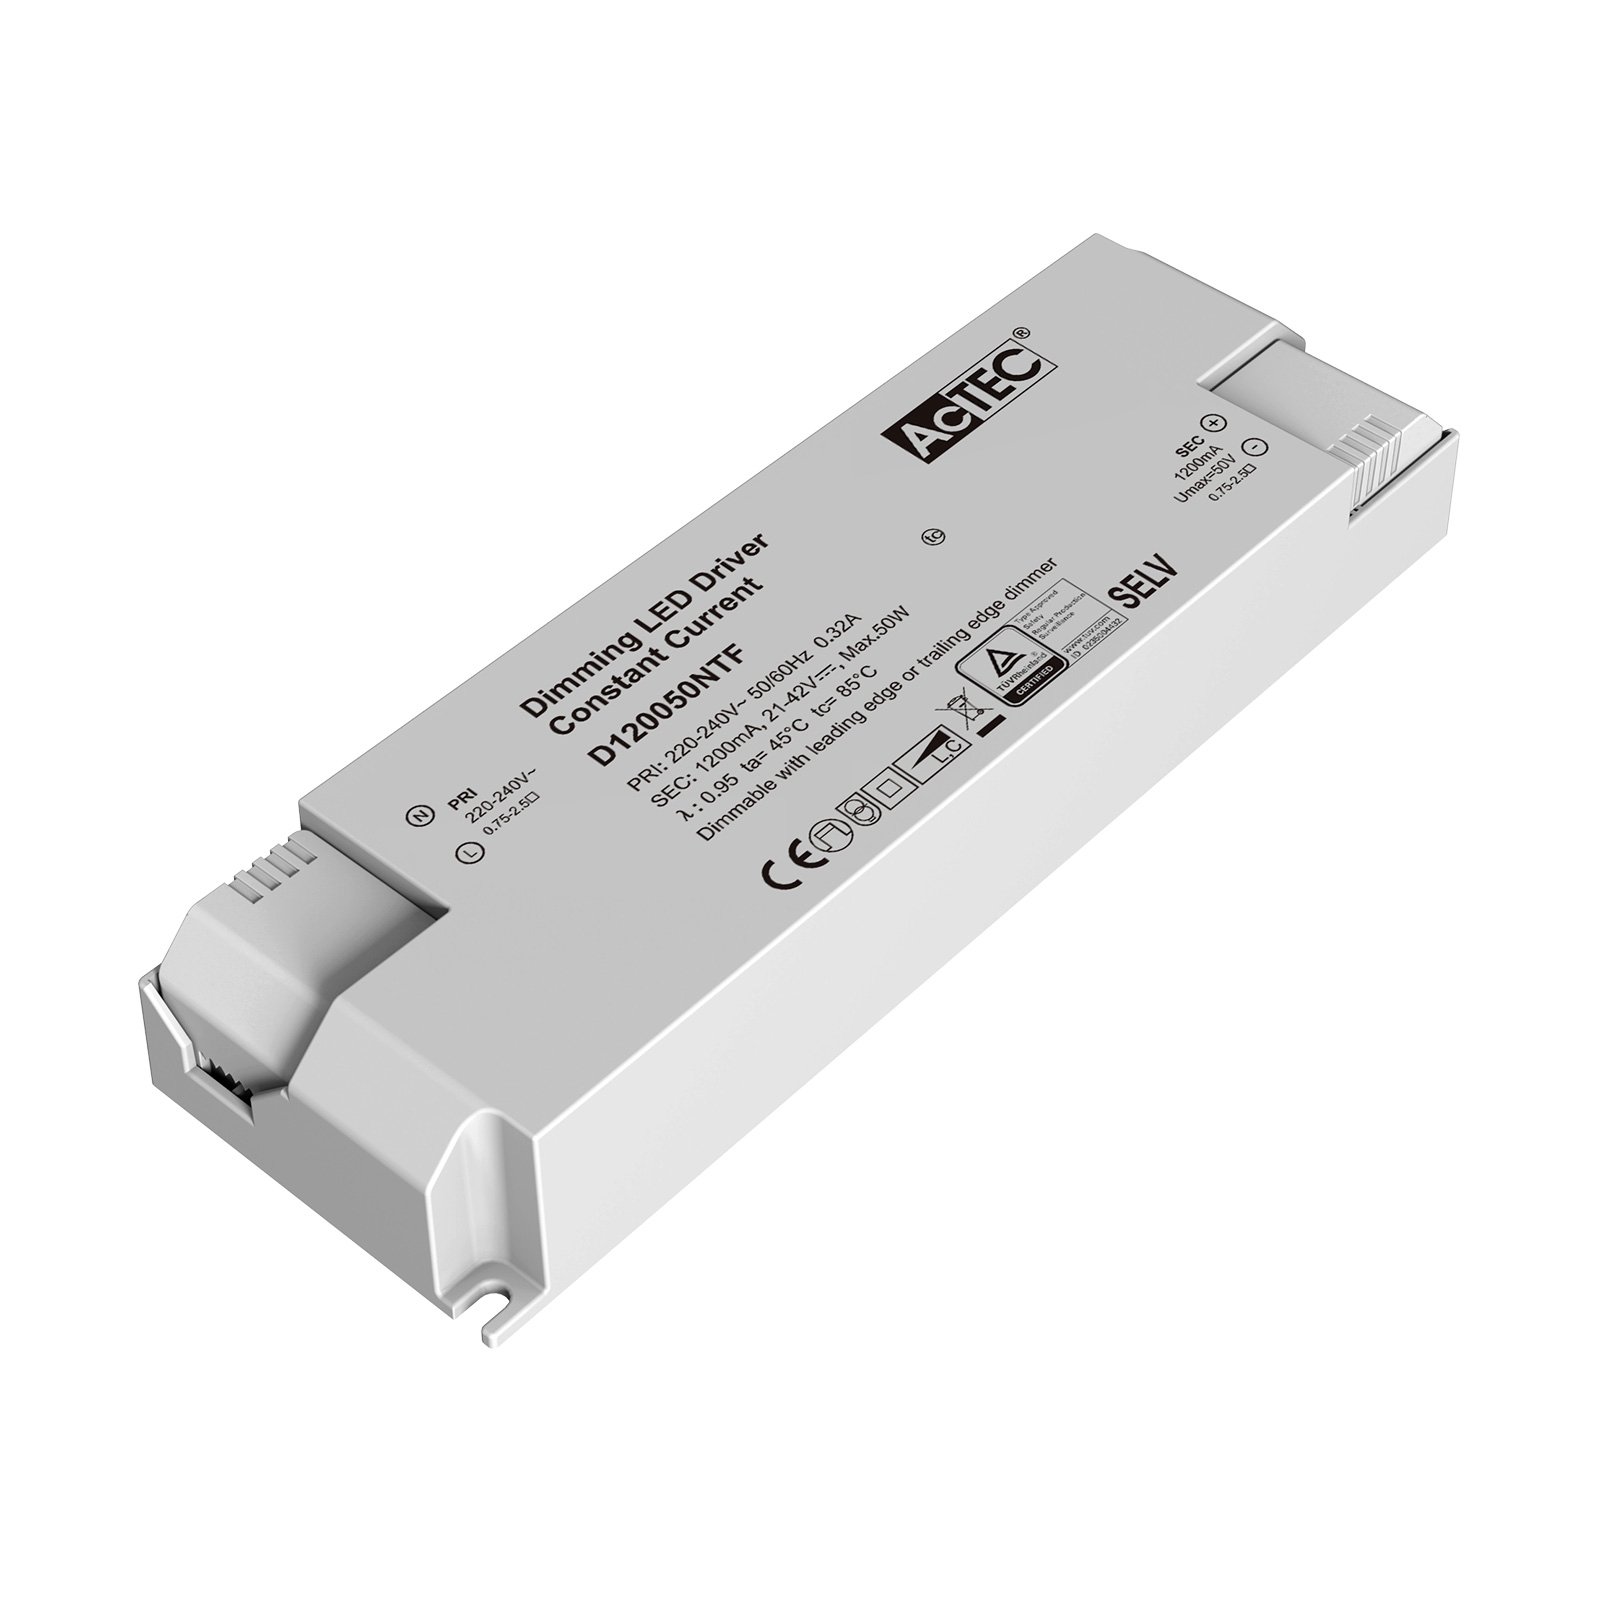 AcTEC Triac -LED-muuntaja CC maks. 50 W, 1 200 mA